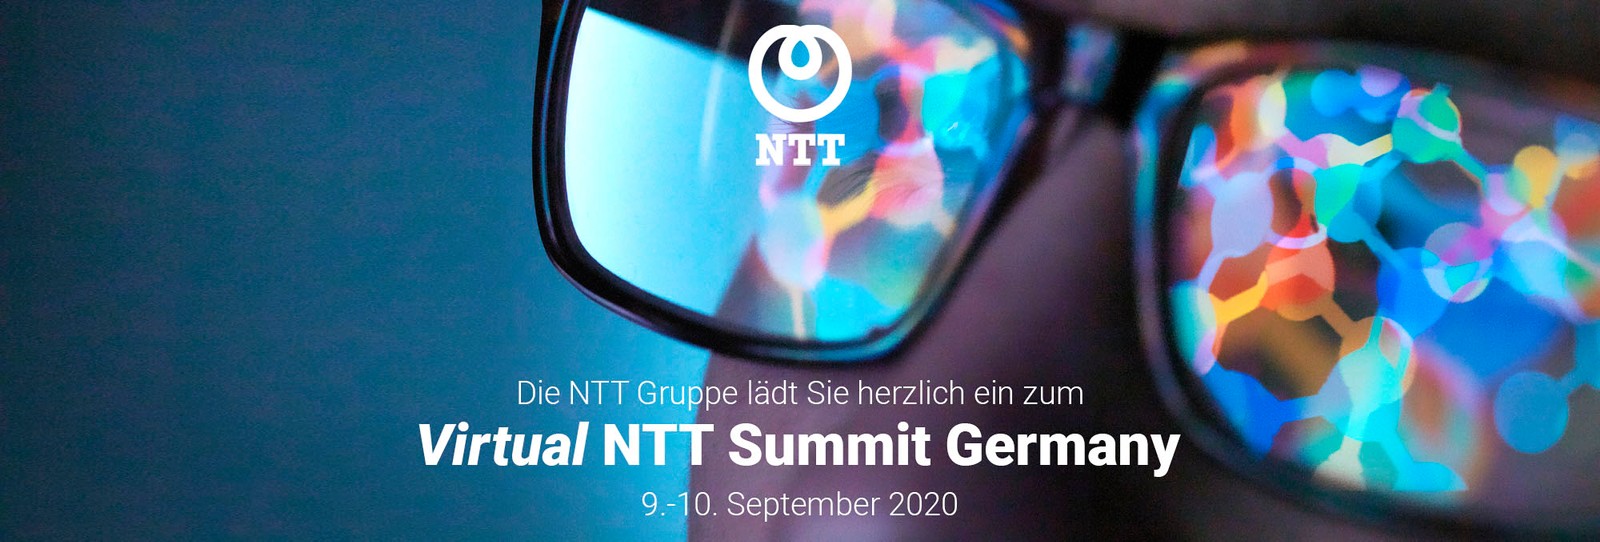 Auf dem Virtual NTT Summit geht es unter anderem auch um IT-Sicherheit und Cybersecurity.